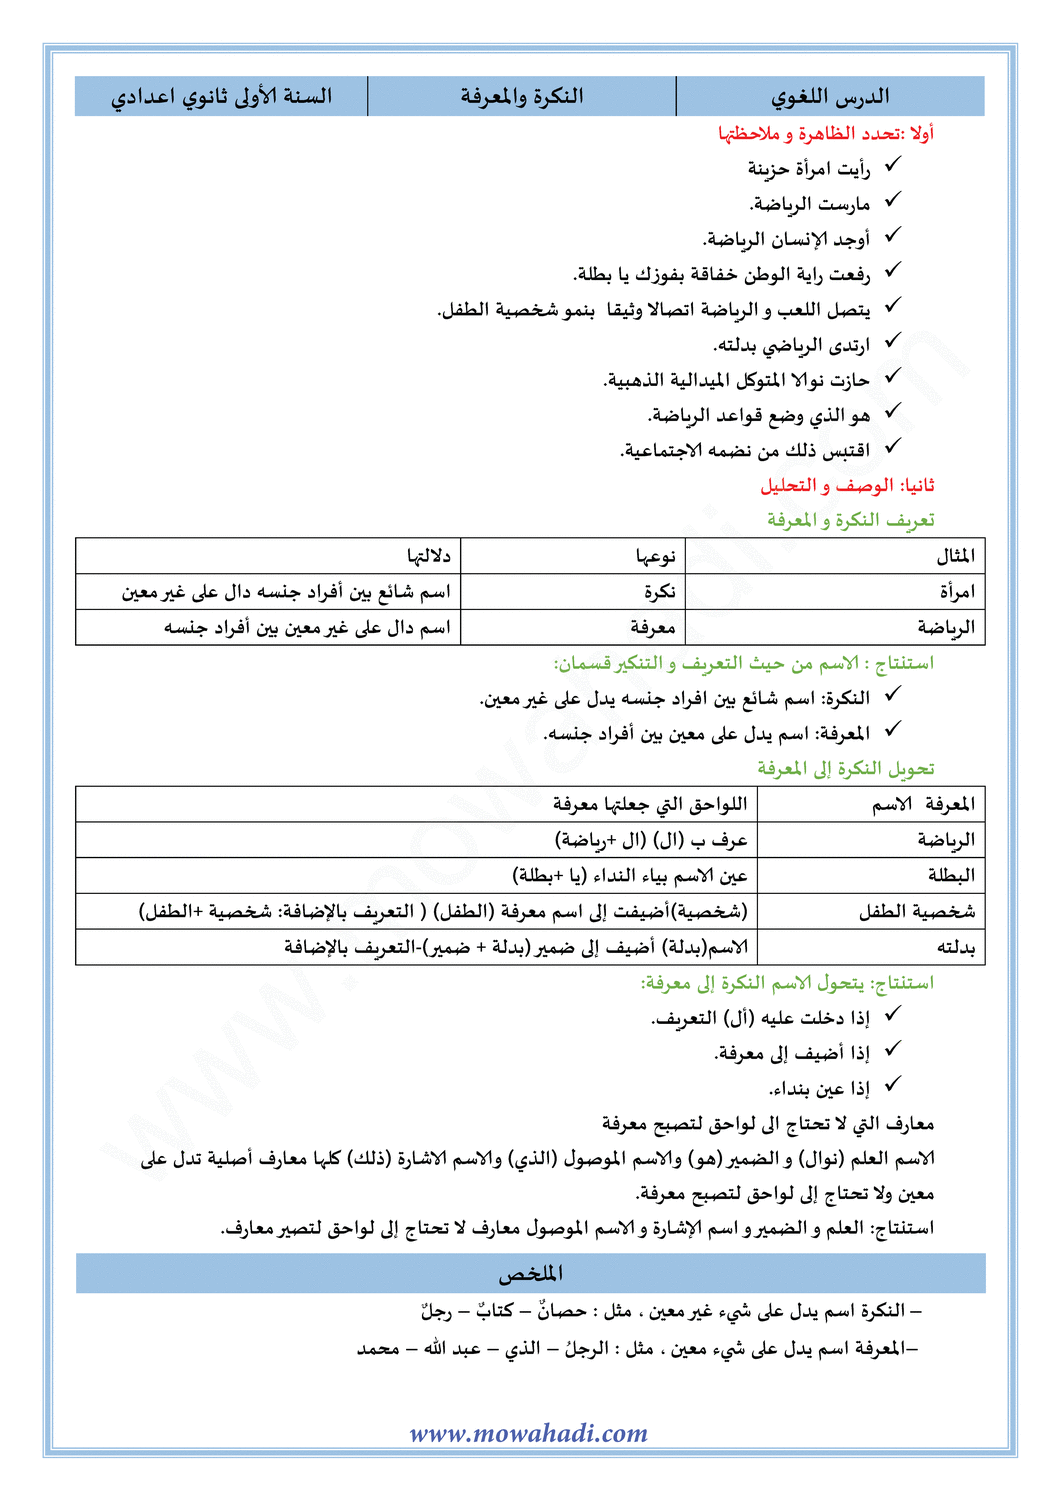 الدرس اللغوي النكرة و المعرفة للسنة الأولى اعدادي في مادة اللغة العربية